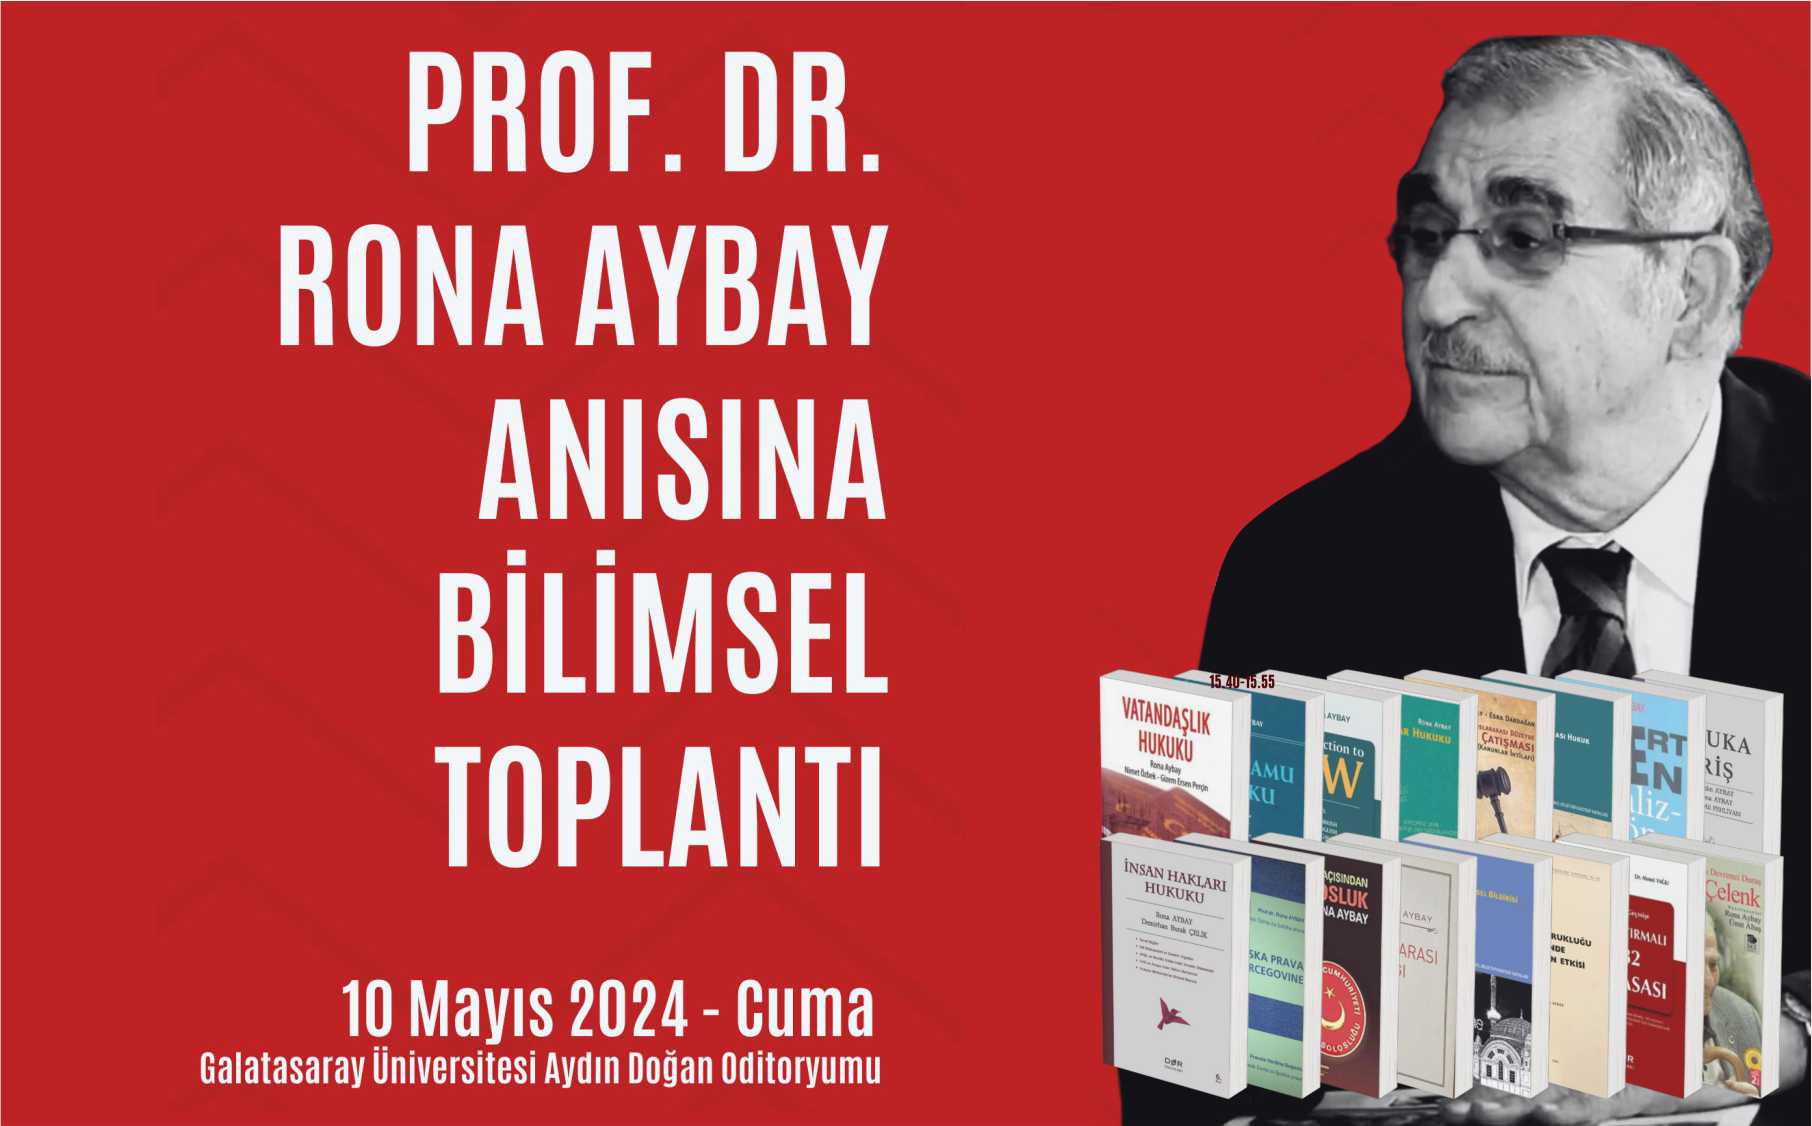 Prof. Dr. Ronay Aybay Anısına Bilimsel Toplantı: 1924 Anayasası'nın 100. Yılında Türkiye'de Vatandaşlık ve İnsan Hakları etkinlik görseli